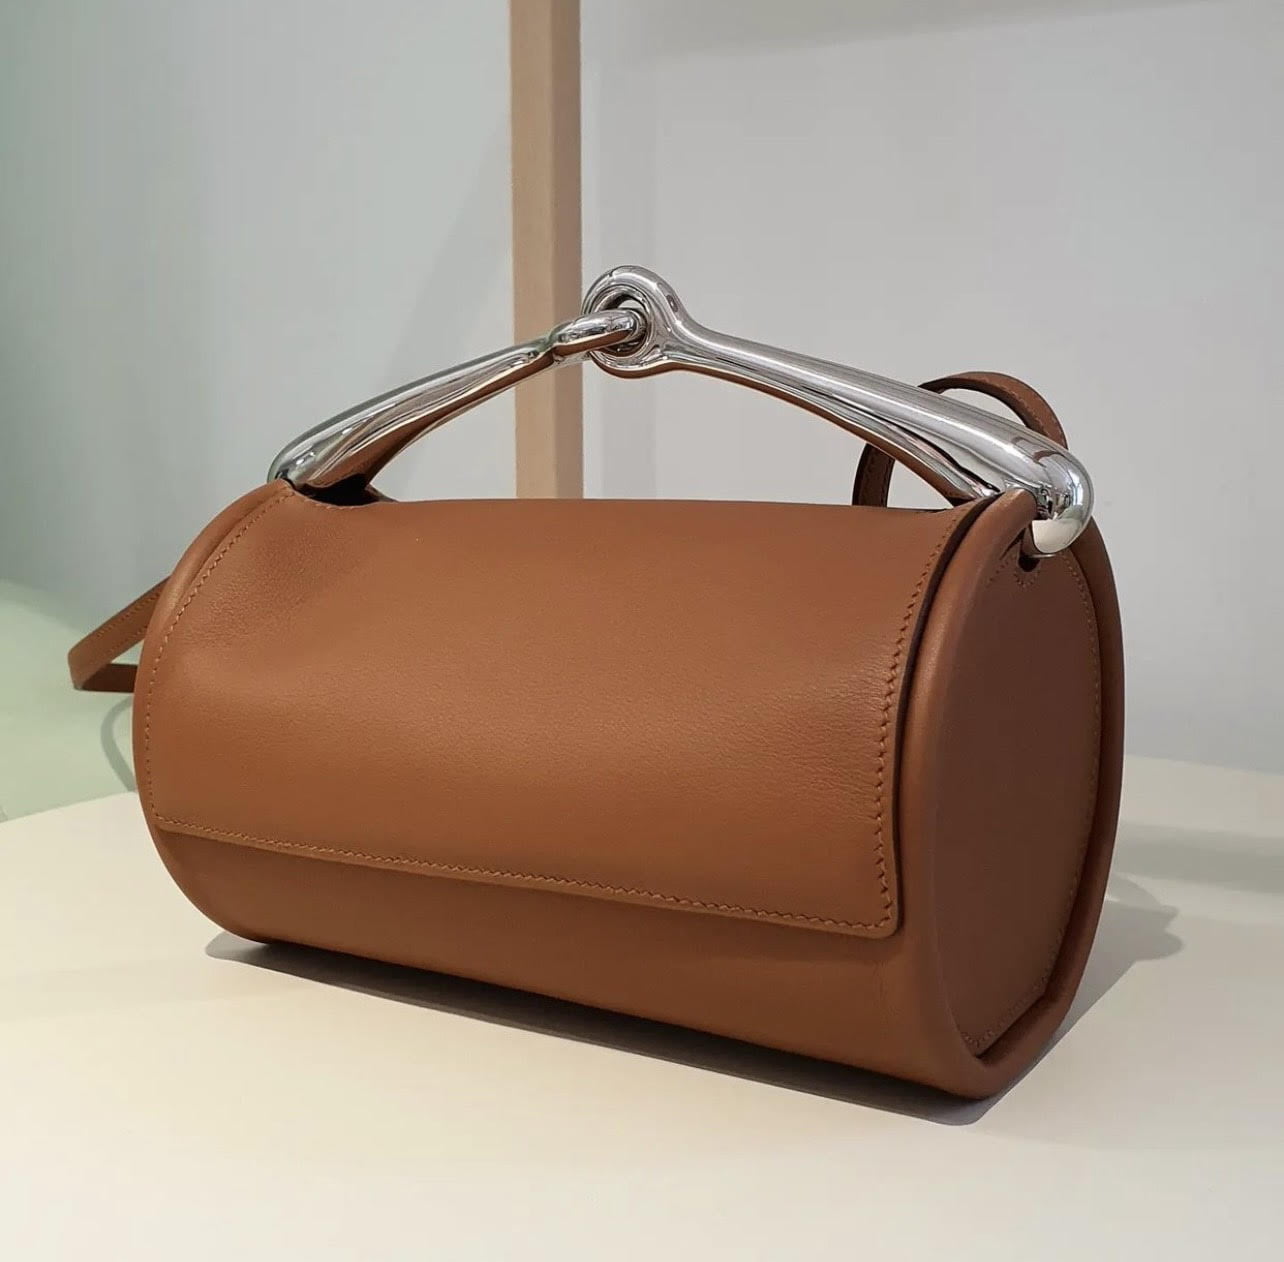 Update: The New Hermès Cargo Birkin in 25cm - PurseBop